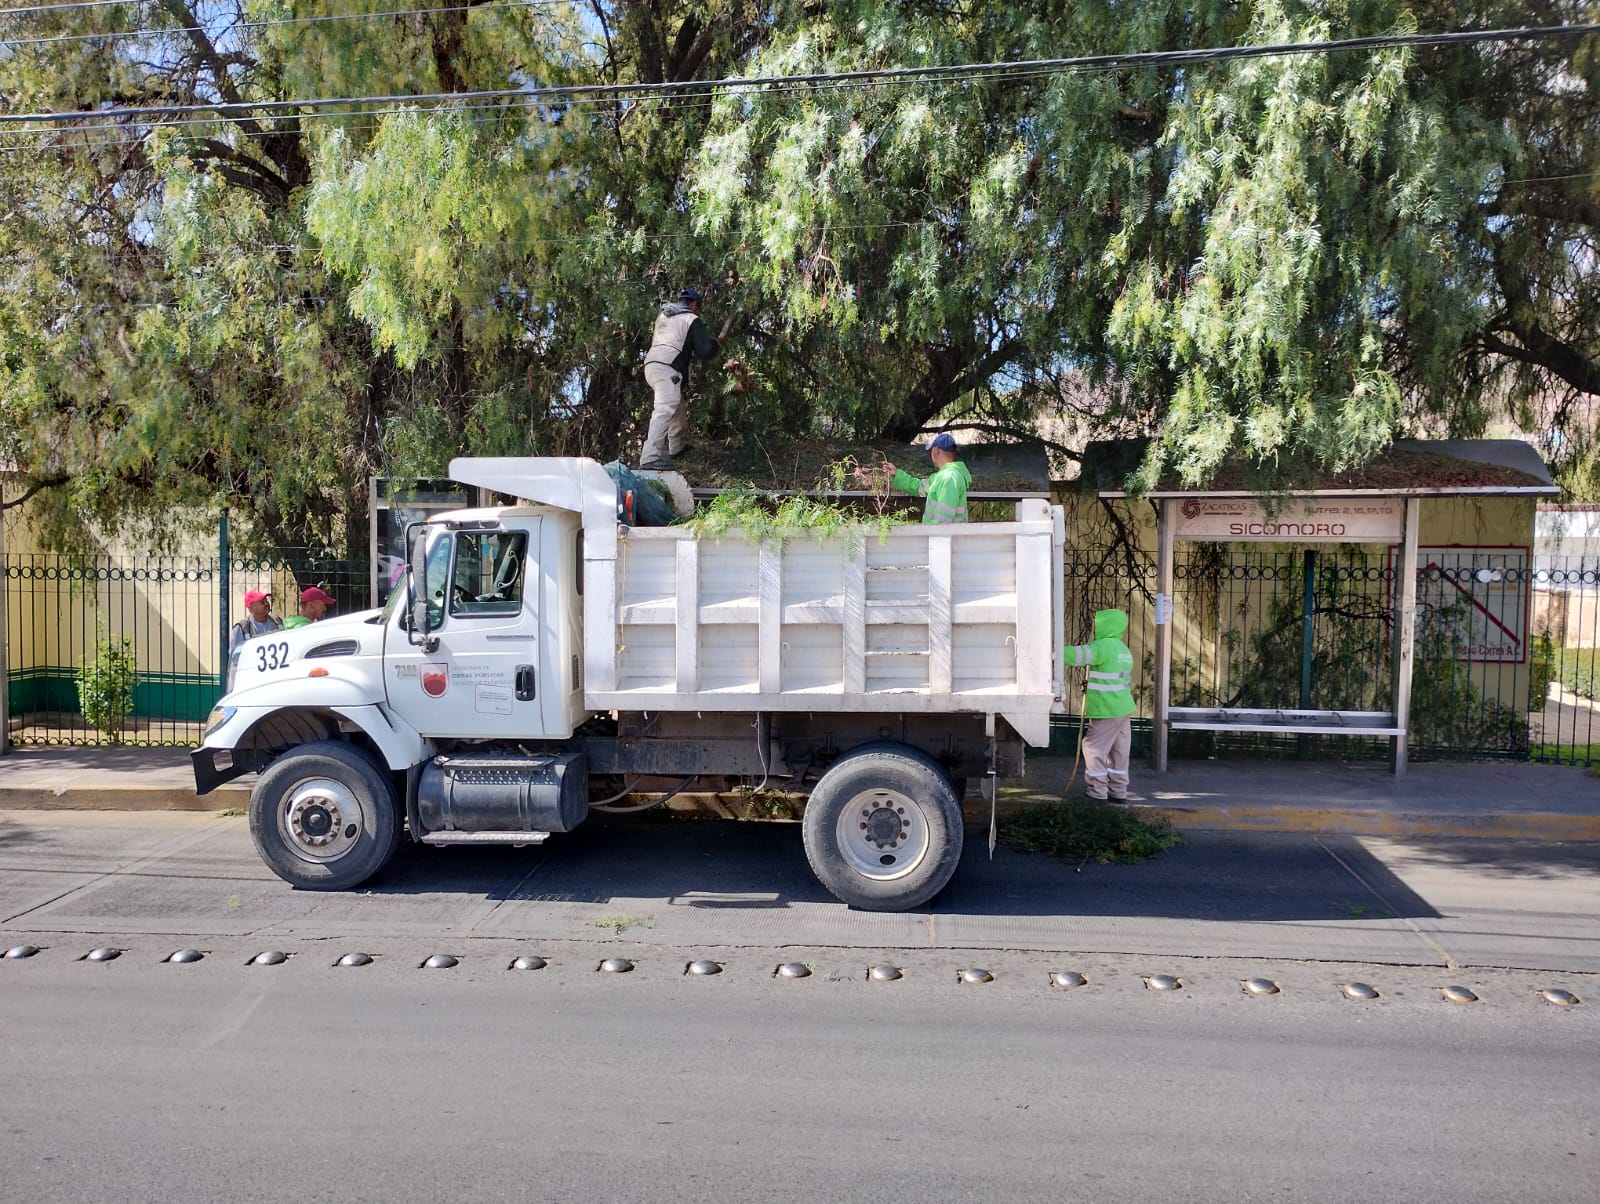 Continúa Gobierno de Zacatecas con mantenimiento de camellones y áreas verdes en la capital